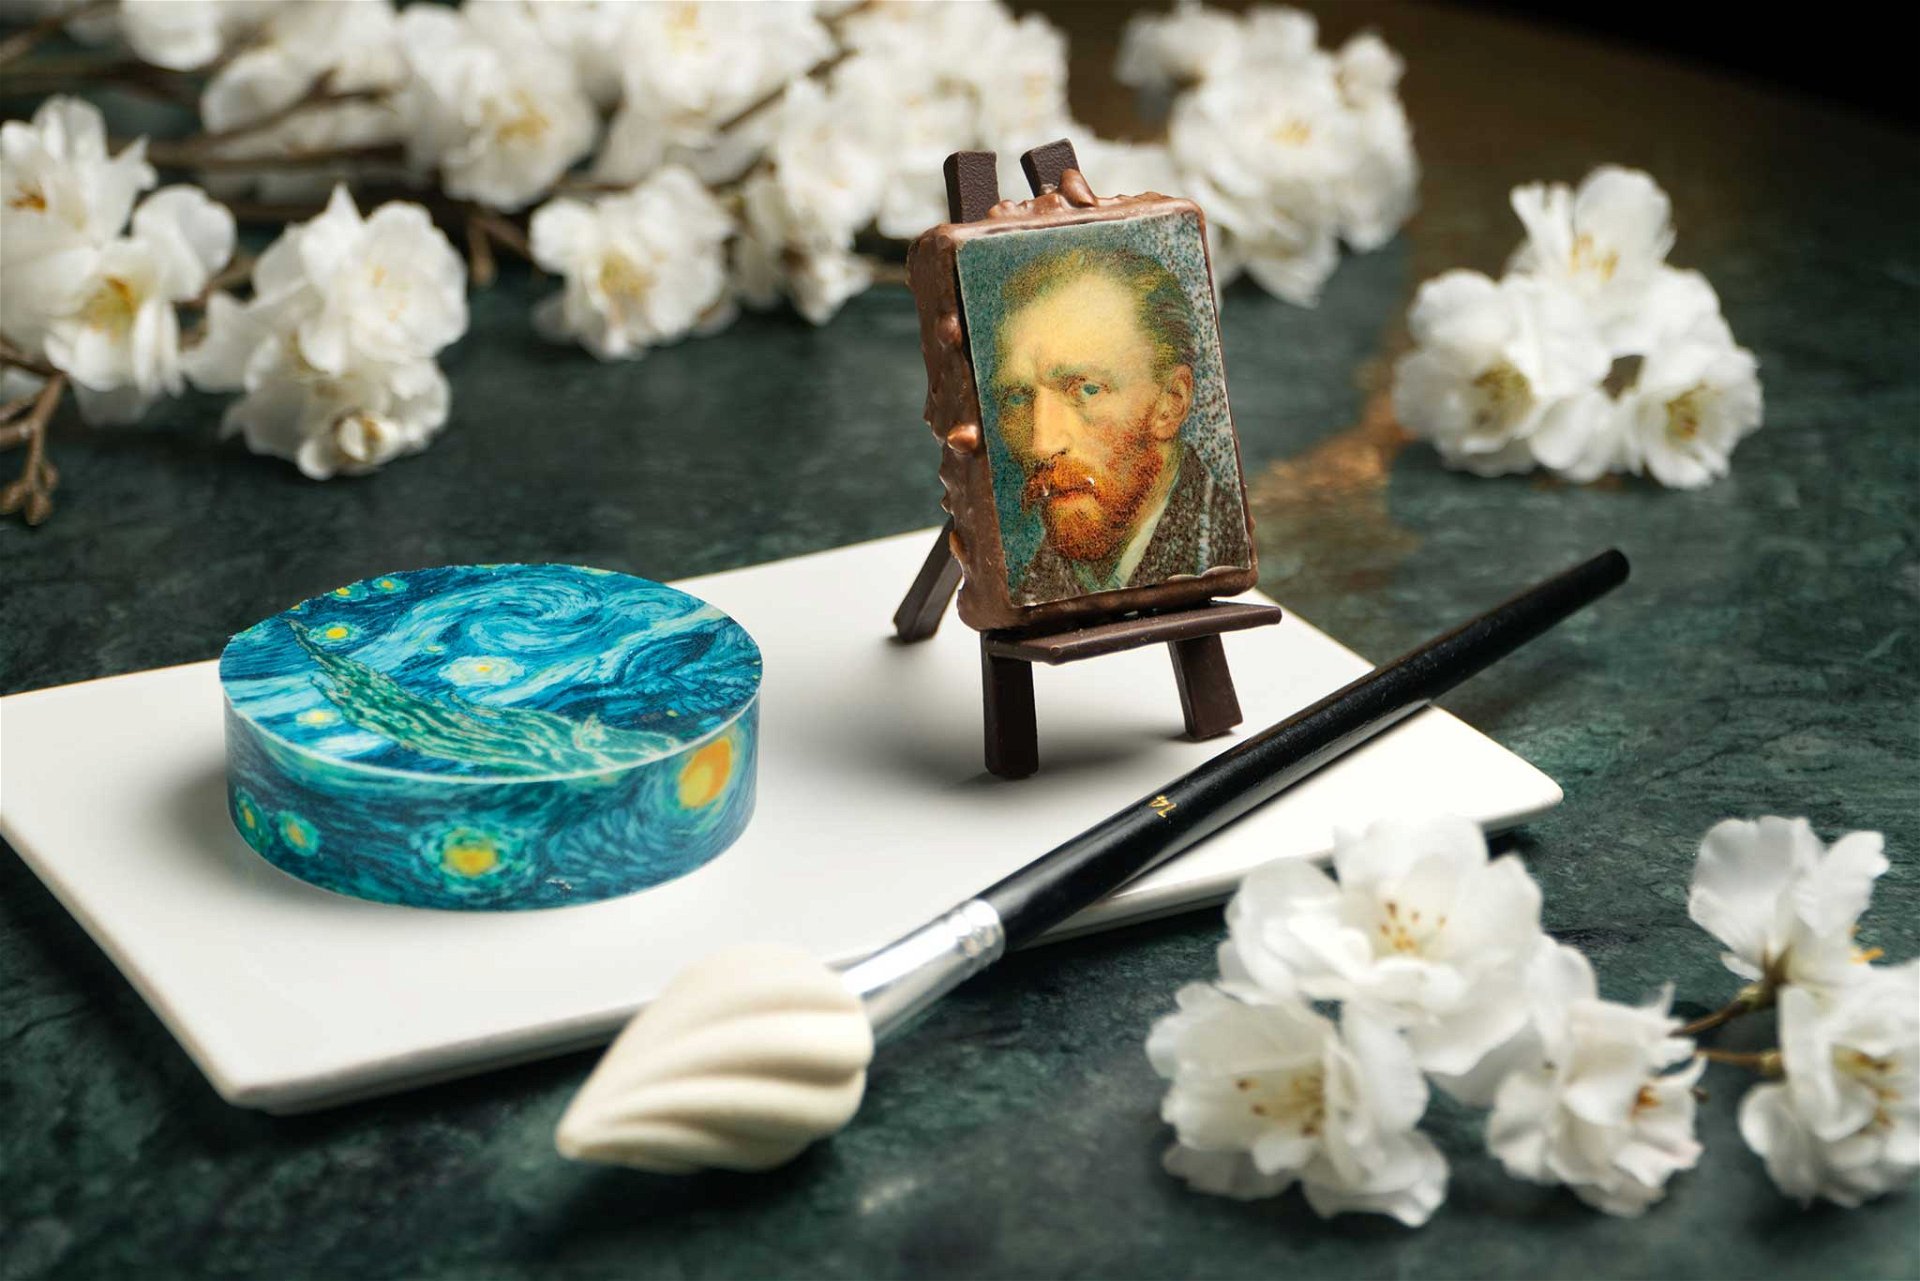 Van Gogh zum Anbeißen Das »Hotel Café Royal« hat berühmte Kunstwerke des niederländischen Malers Vincent van Gogh in raffinierte Törtchen und Süßigkeiten verwandelt. Man kann kaum glauben, dass diese faszinierenden Miniaturen tatsächlich zum Verzehr gedacht sind. Eingenommen wird der künstlerische Afternoon Tea stilgerecht in der Oscar Wild Lounge. hotelcaferoyal.com